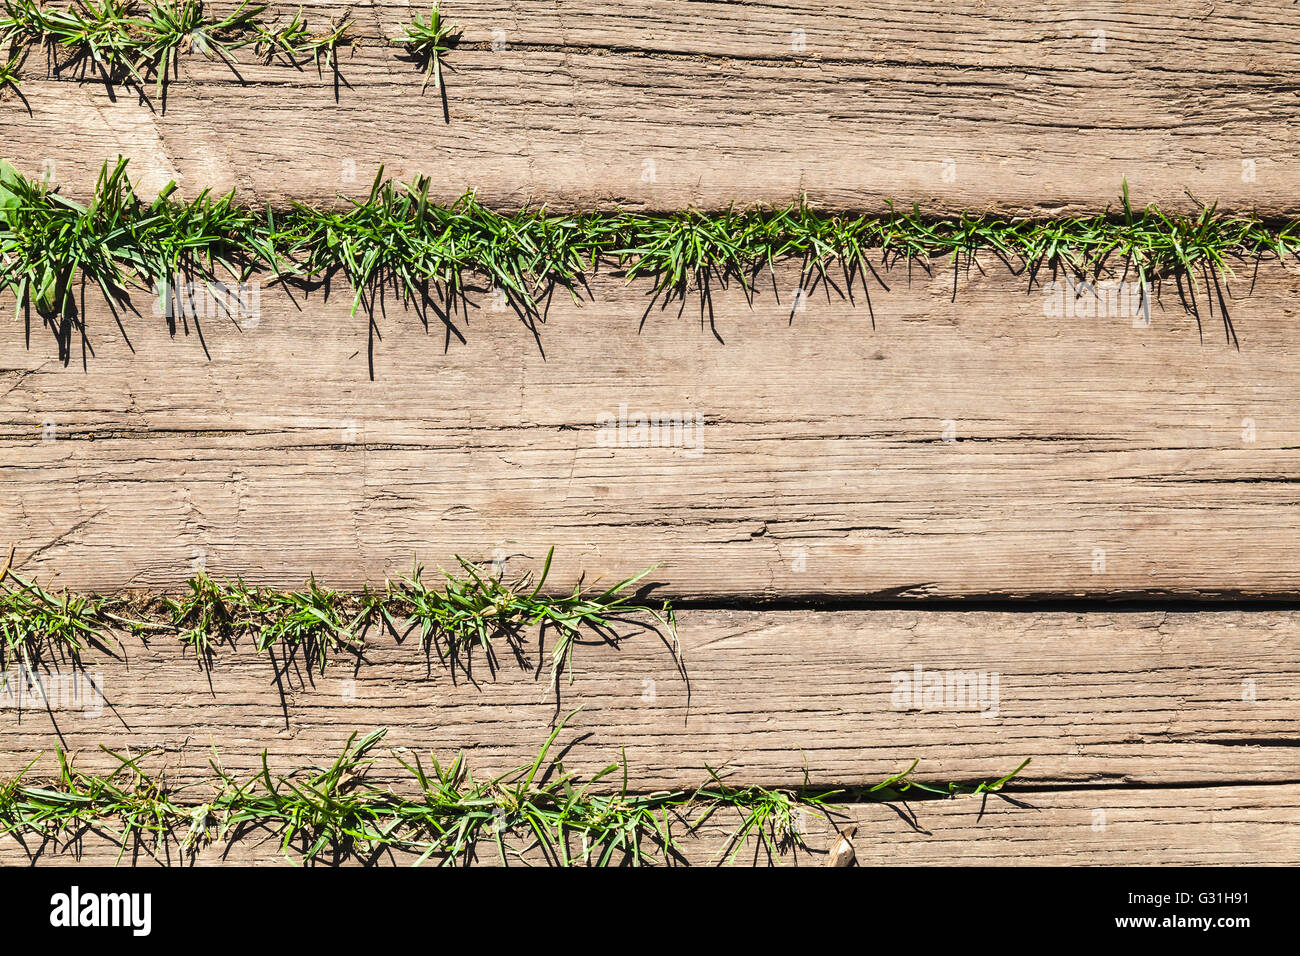 Braun verwitterte Holzboden mit grünen Rasen wachsen durch Risse zwischen den Brettern Hintergrundtextur Foto Stockfoto